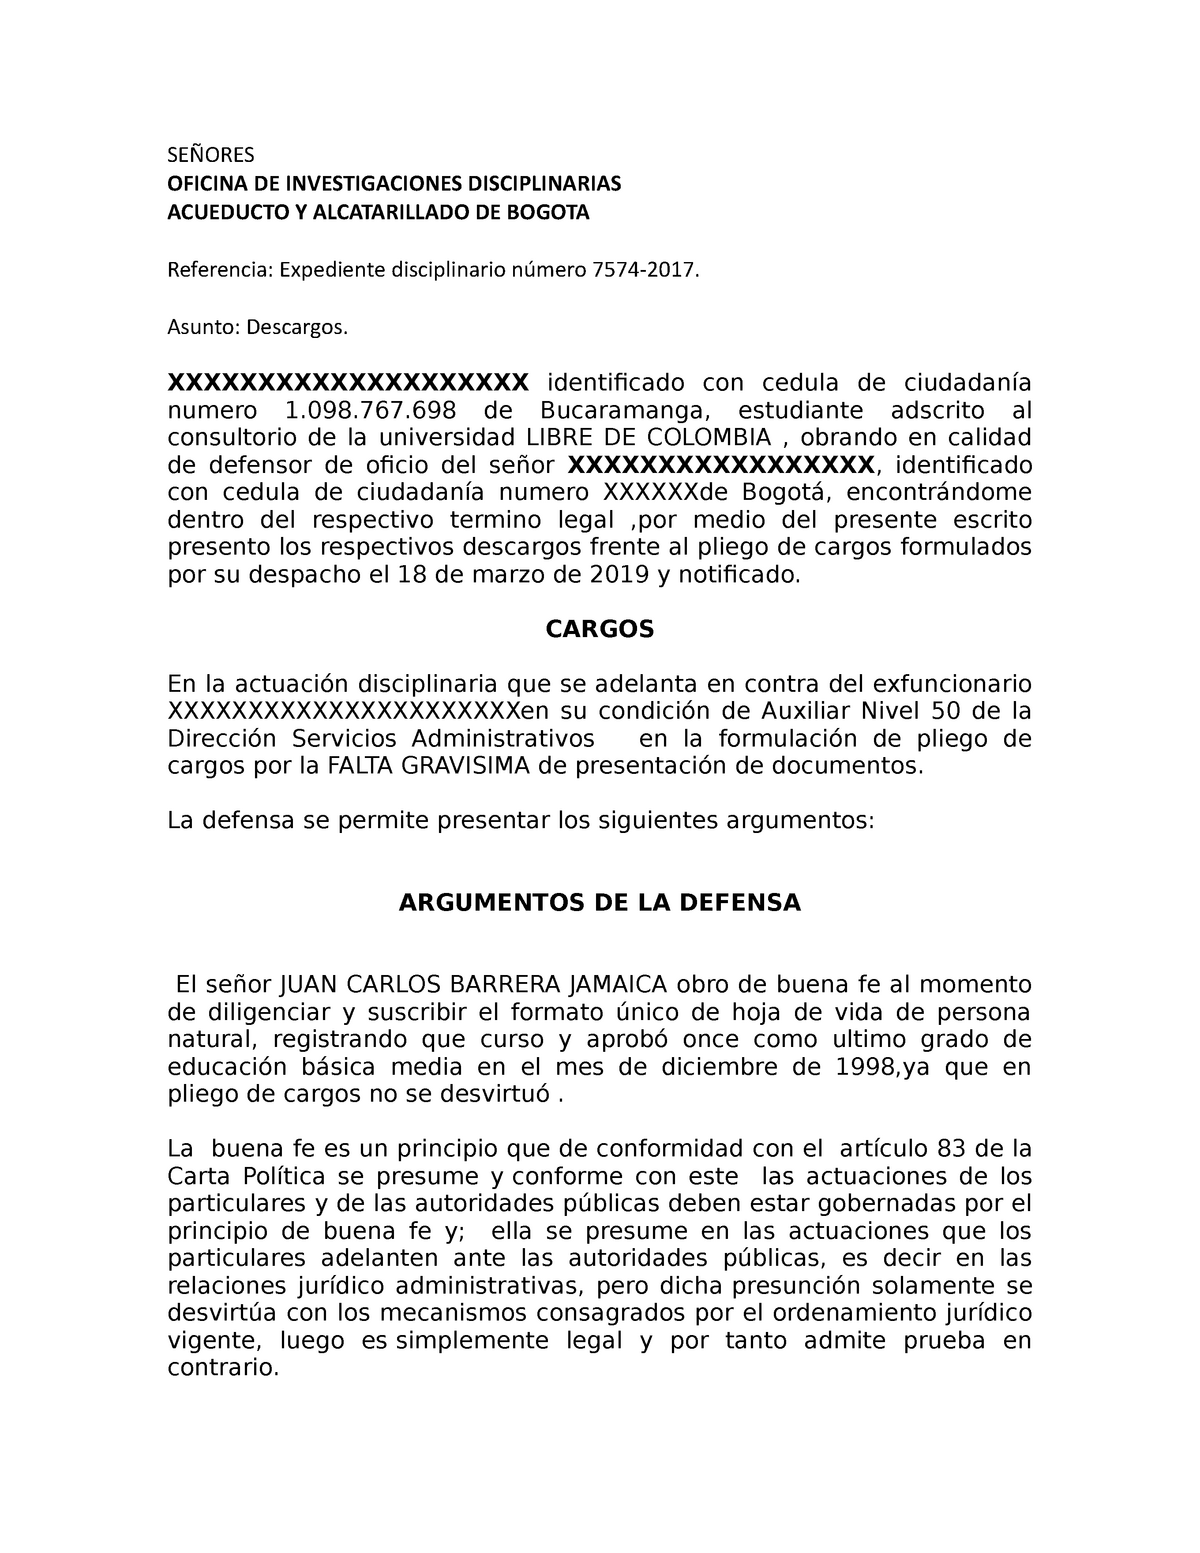 Descargos JUAN - formato - SEÑORES OFICINA DE INVESTIGACIONES  DISCIPLINARIAS ACUEDUCTO Y - Studocu